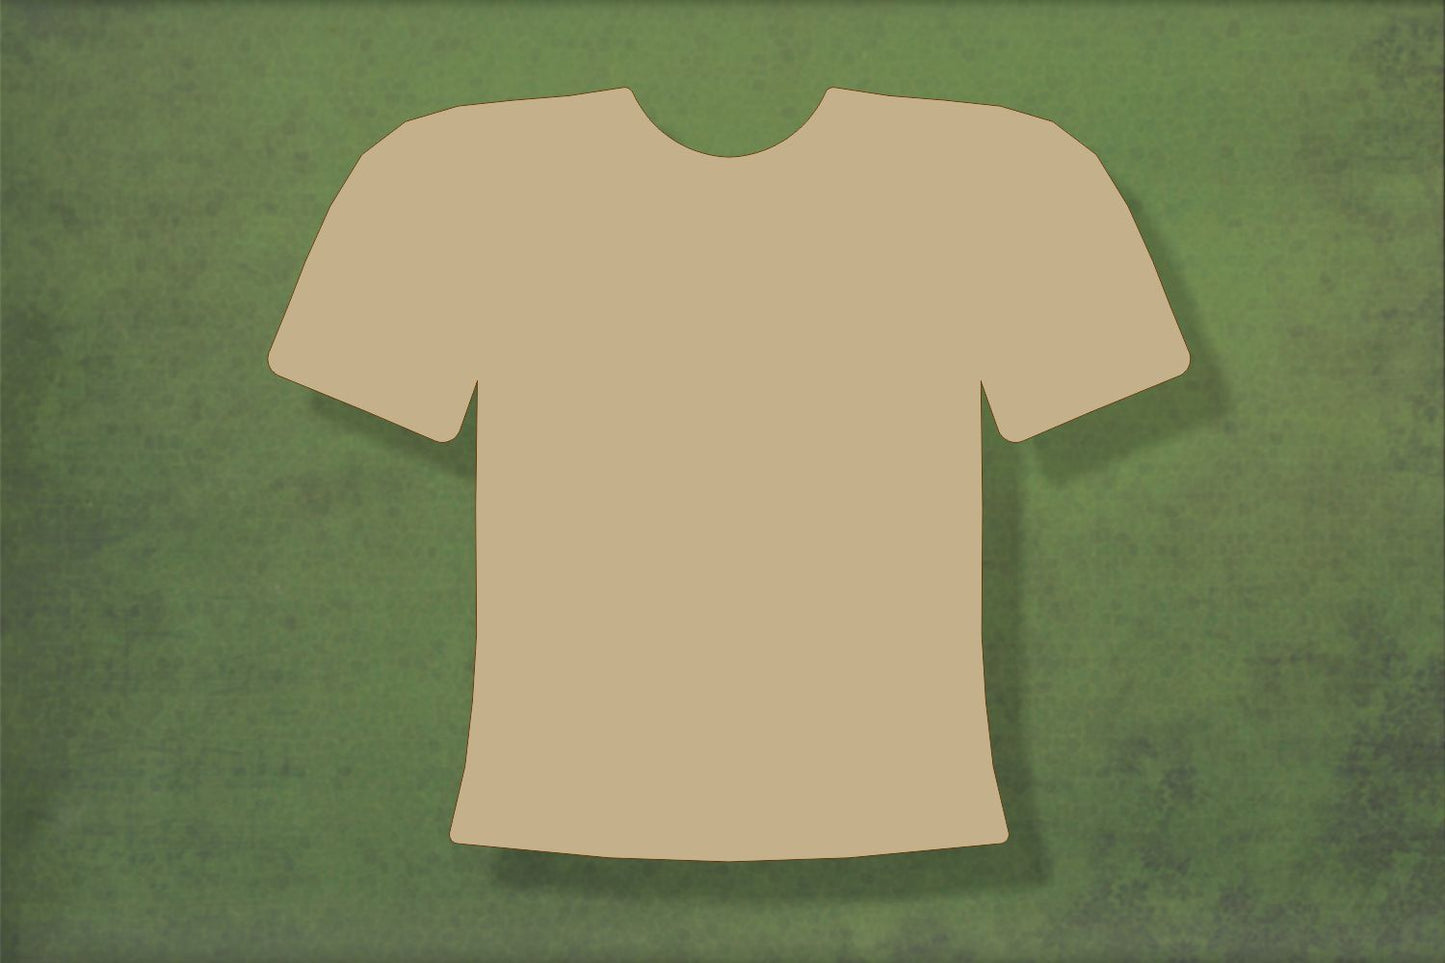 Laser cut, blank wooden Football shirt shape for craft